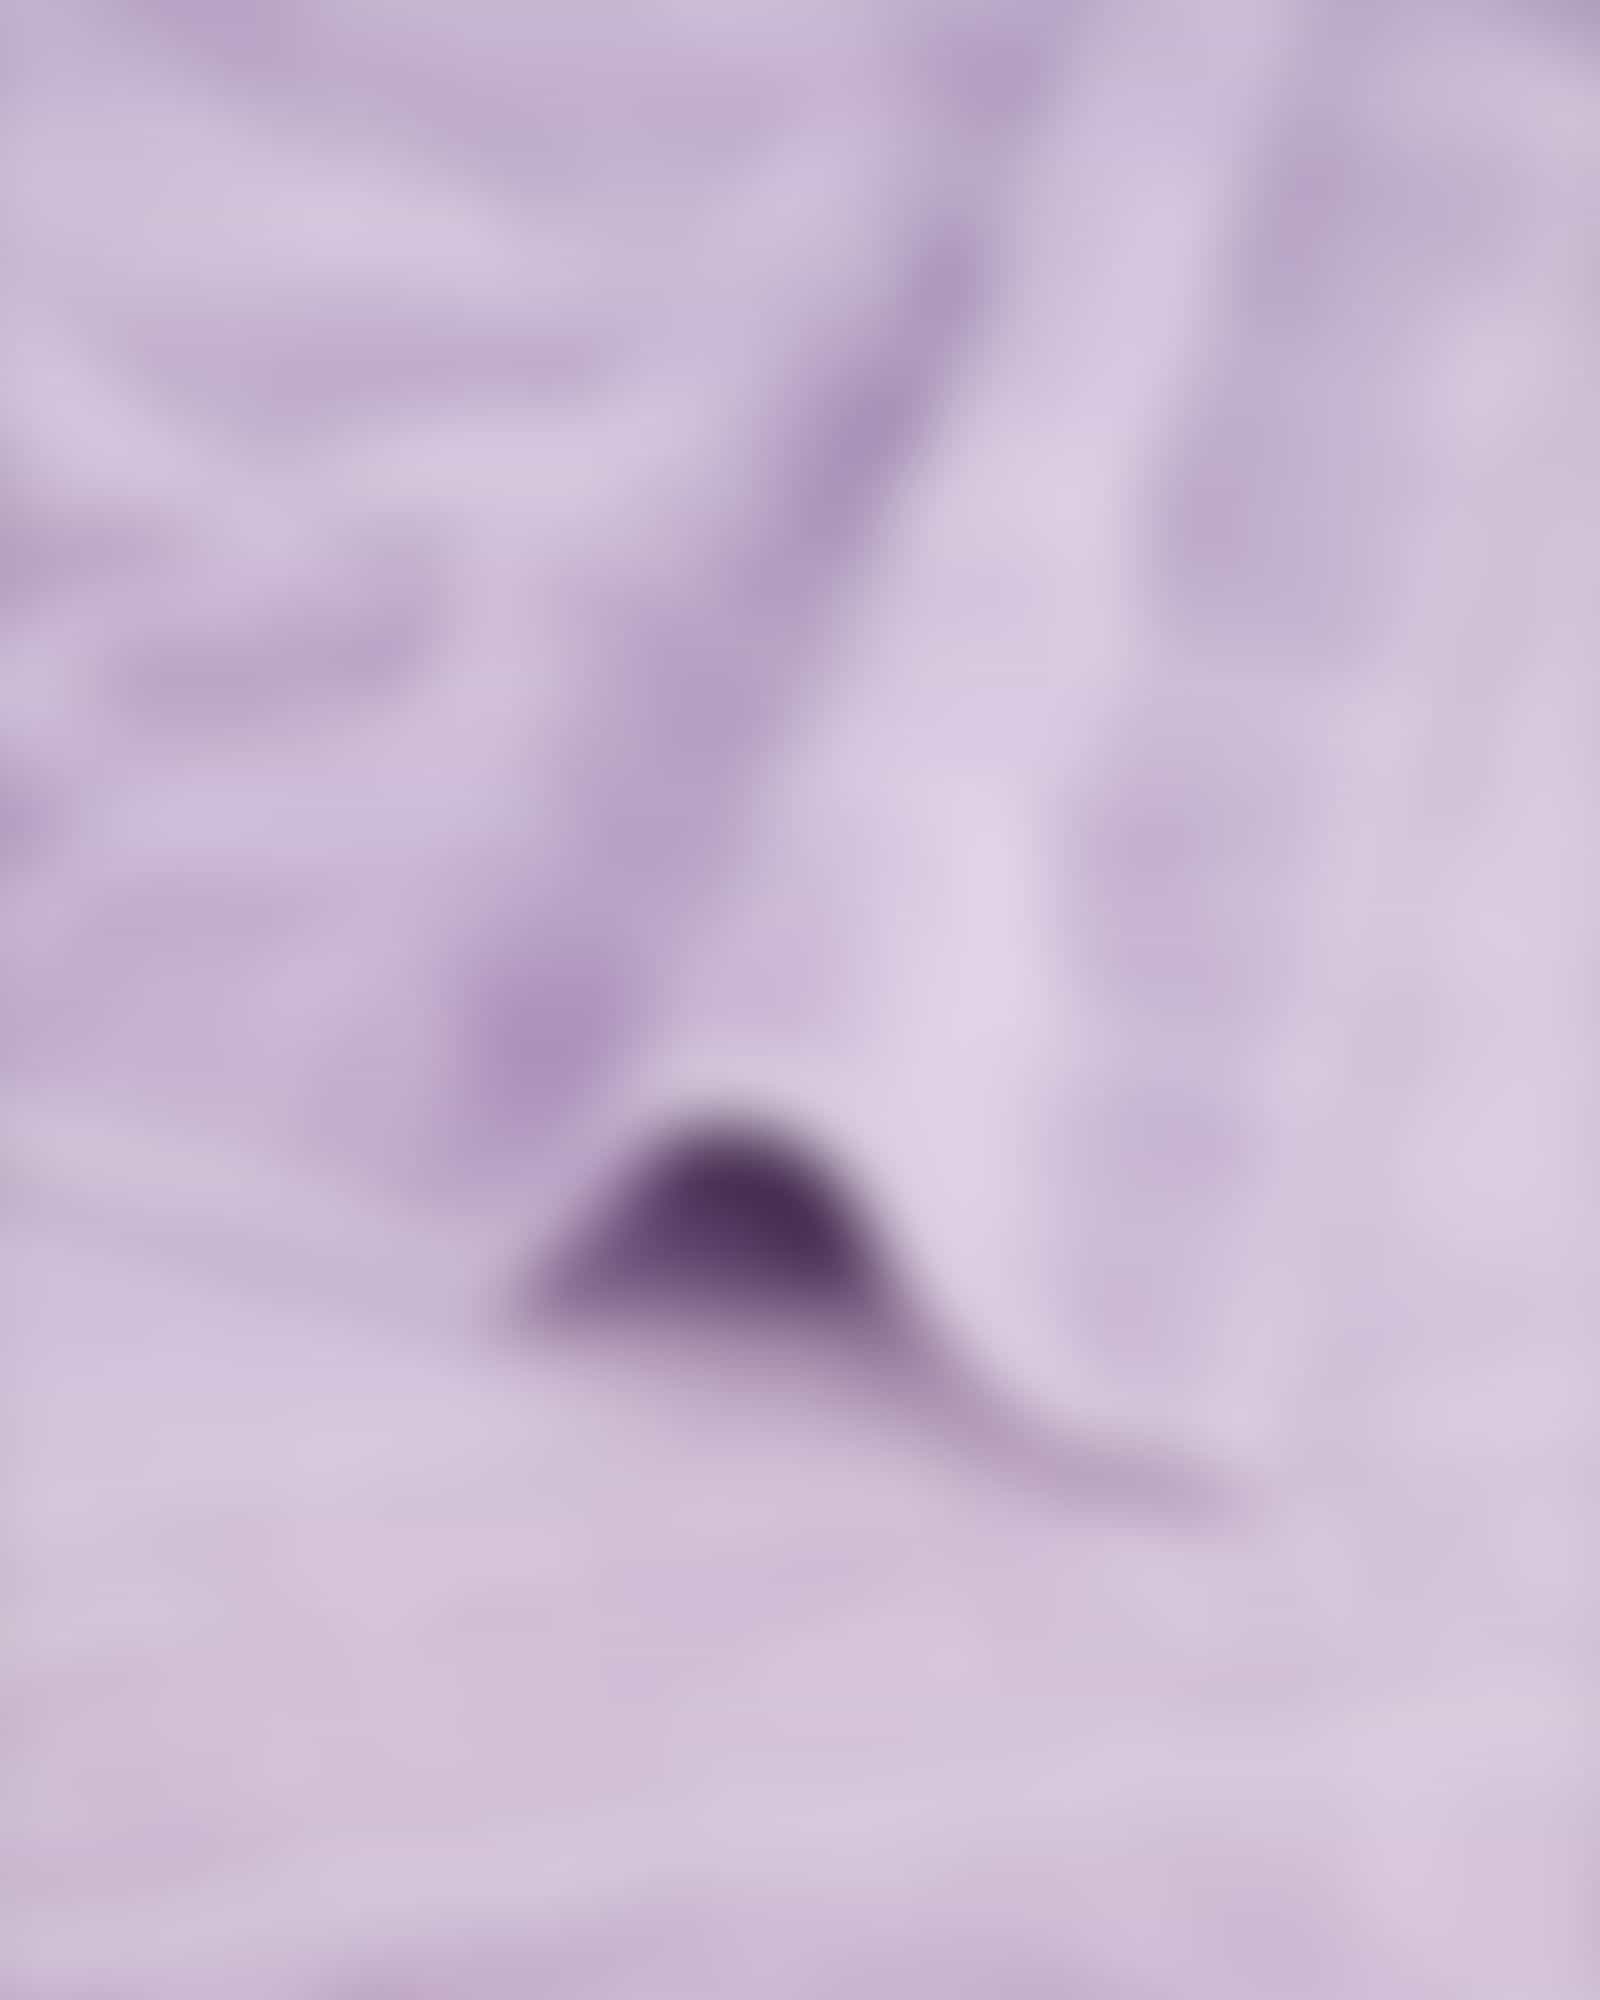 Cawö - Noblesse Uni 1001 - Farbe: lavendel - 806 - Seiflappen 30x30 cm